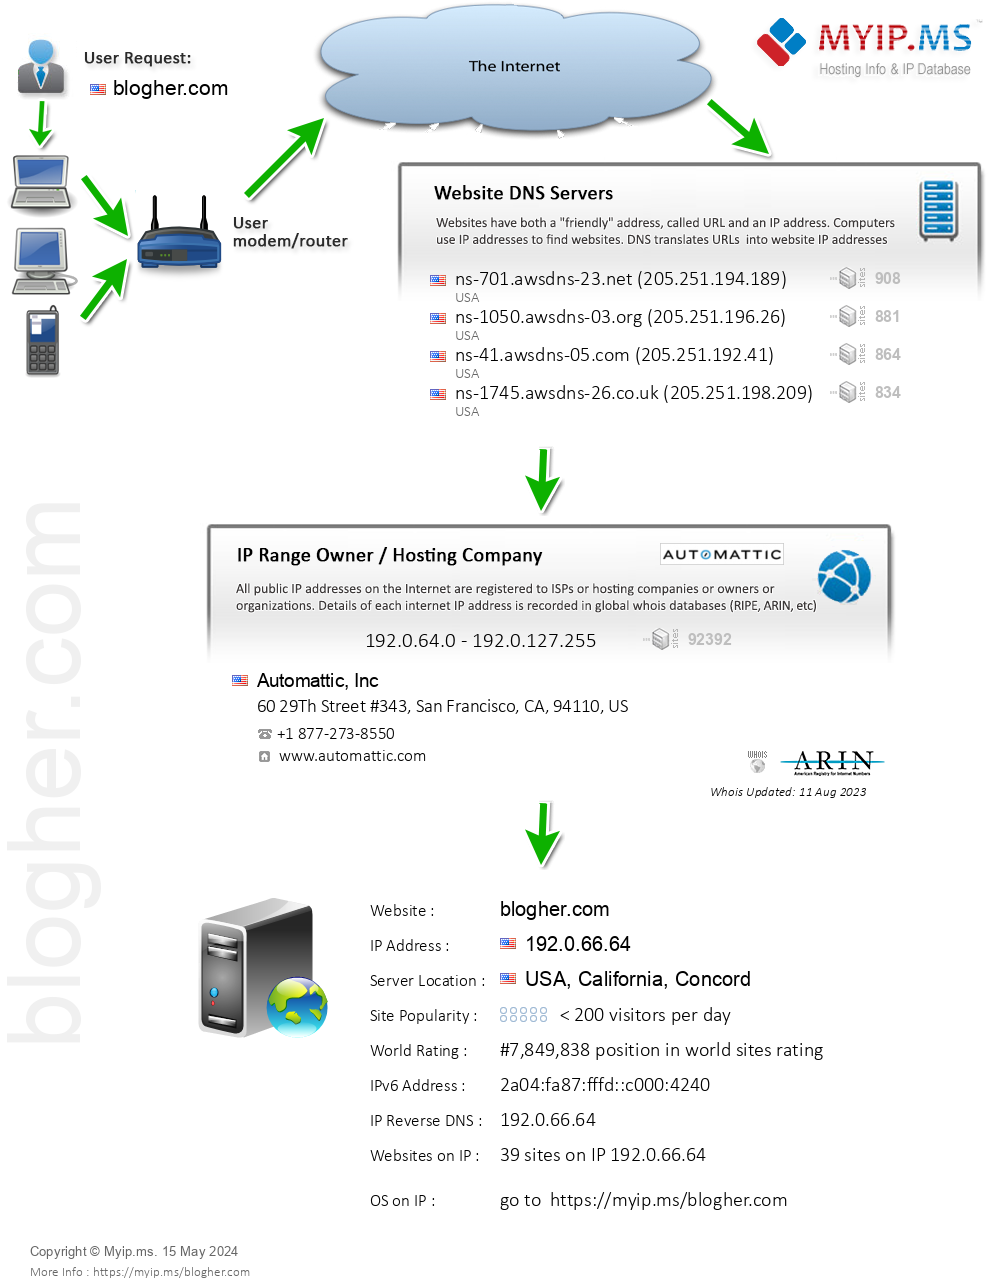 Blogher.com - Website Hosting Visual IP Diagram